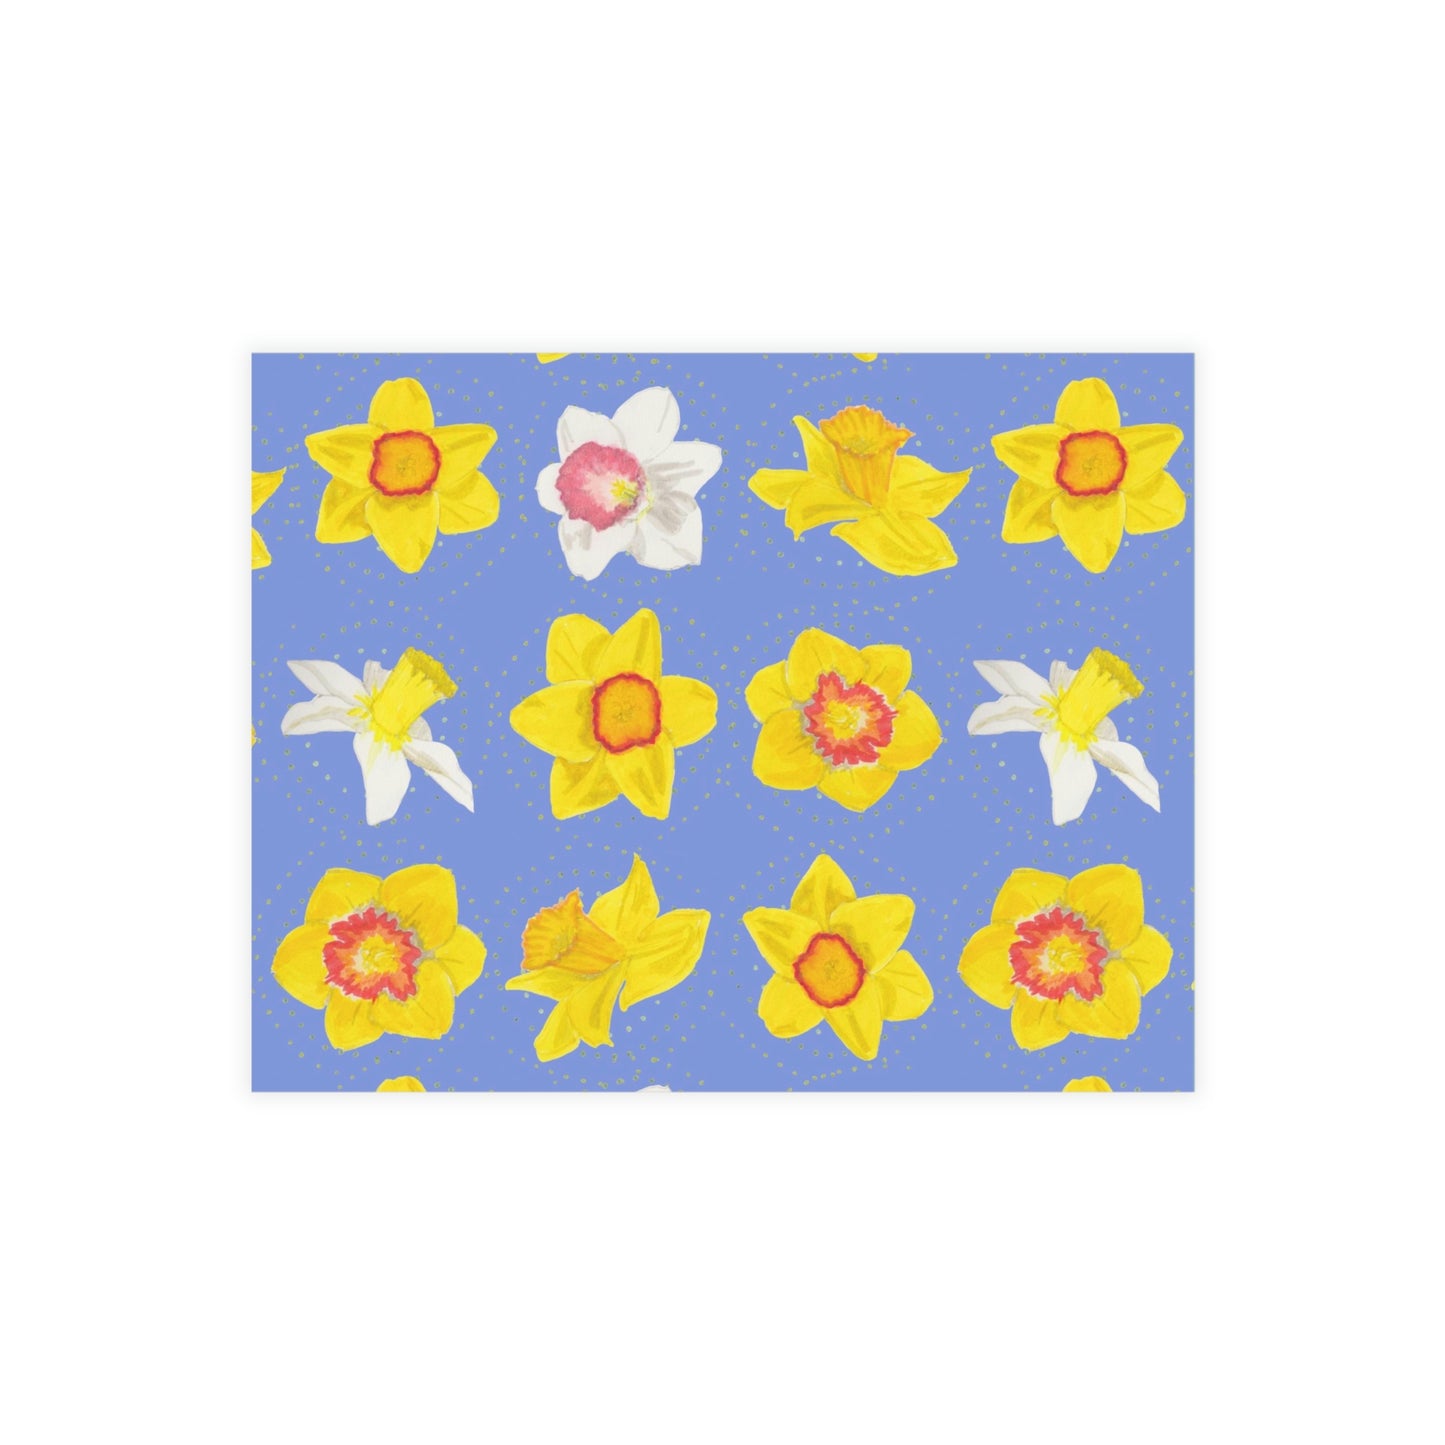 Daffodil Festival Greeting Card Bundle - Daffodils on Blue